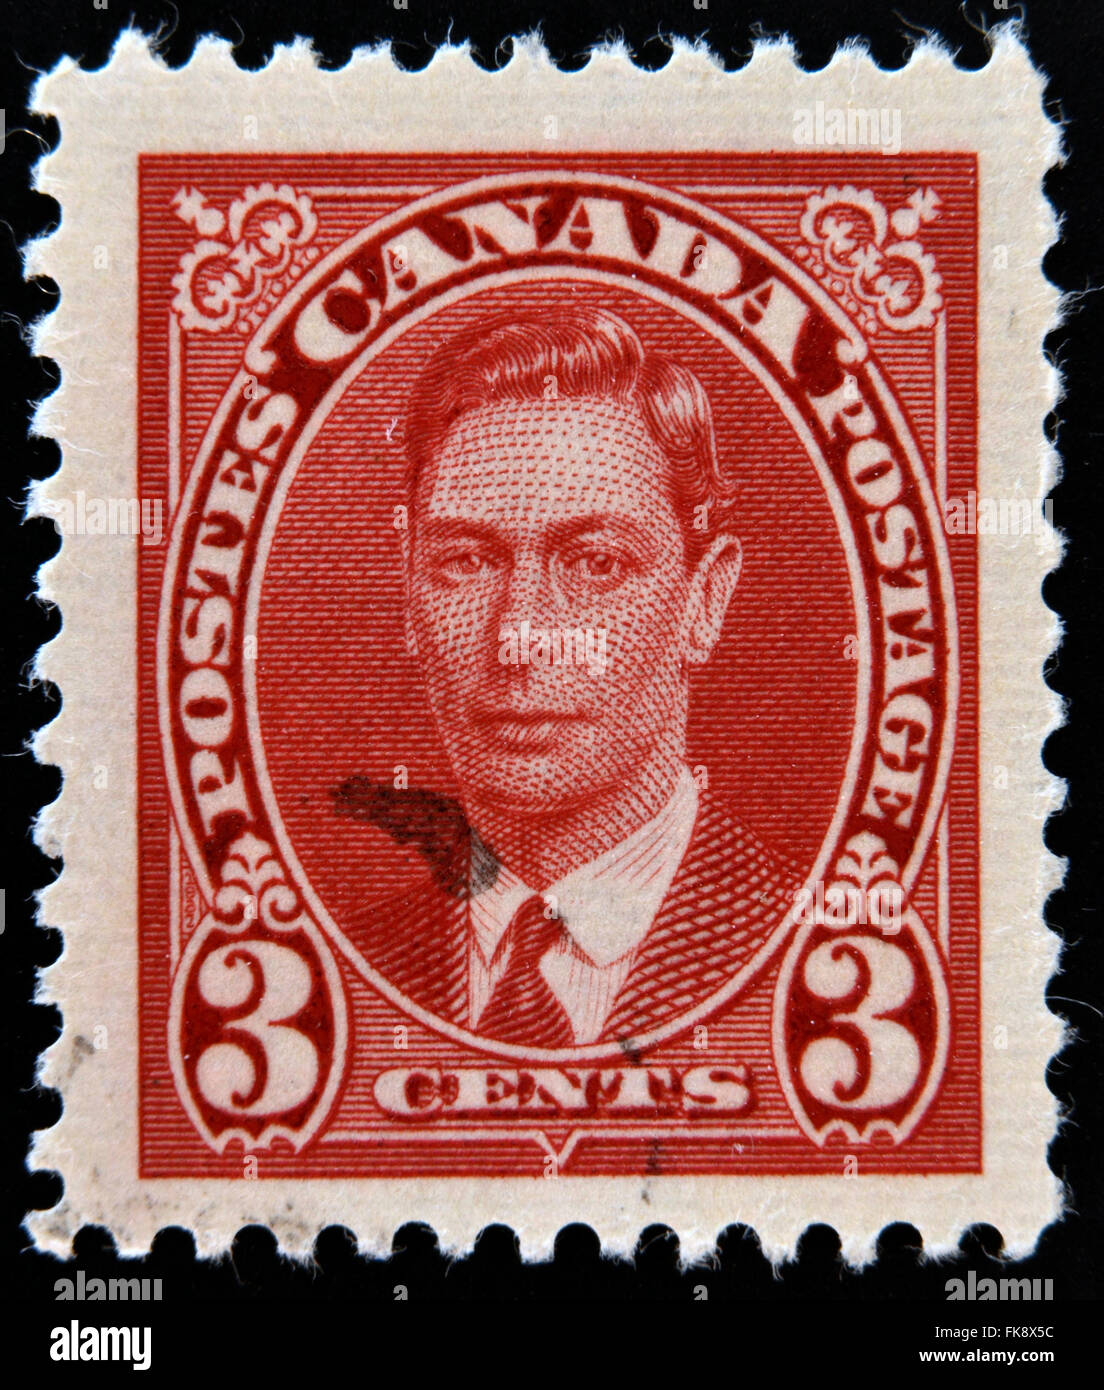 CANADA - circa 1935 : timbre imprimé au Canada montre portrait du roi George VI, vers 1935 Banque D'Images